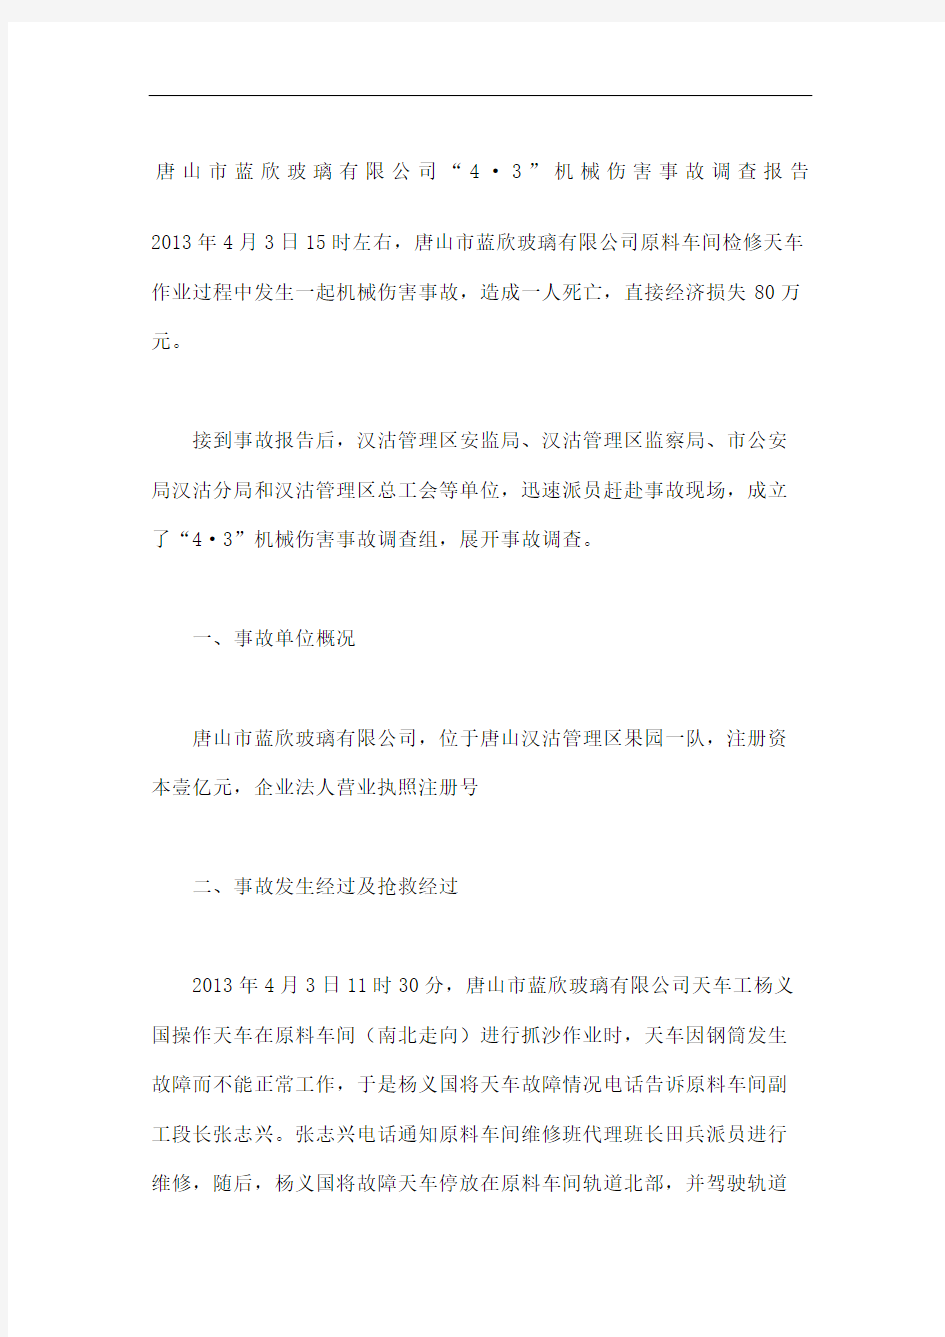 唐山市蓝欣玻璃公司机械伤害事故调查报告